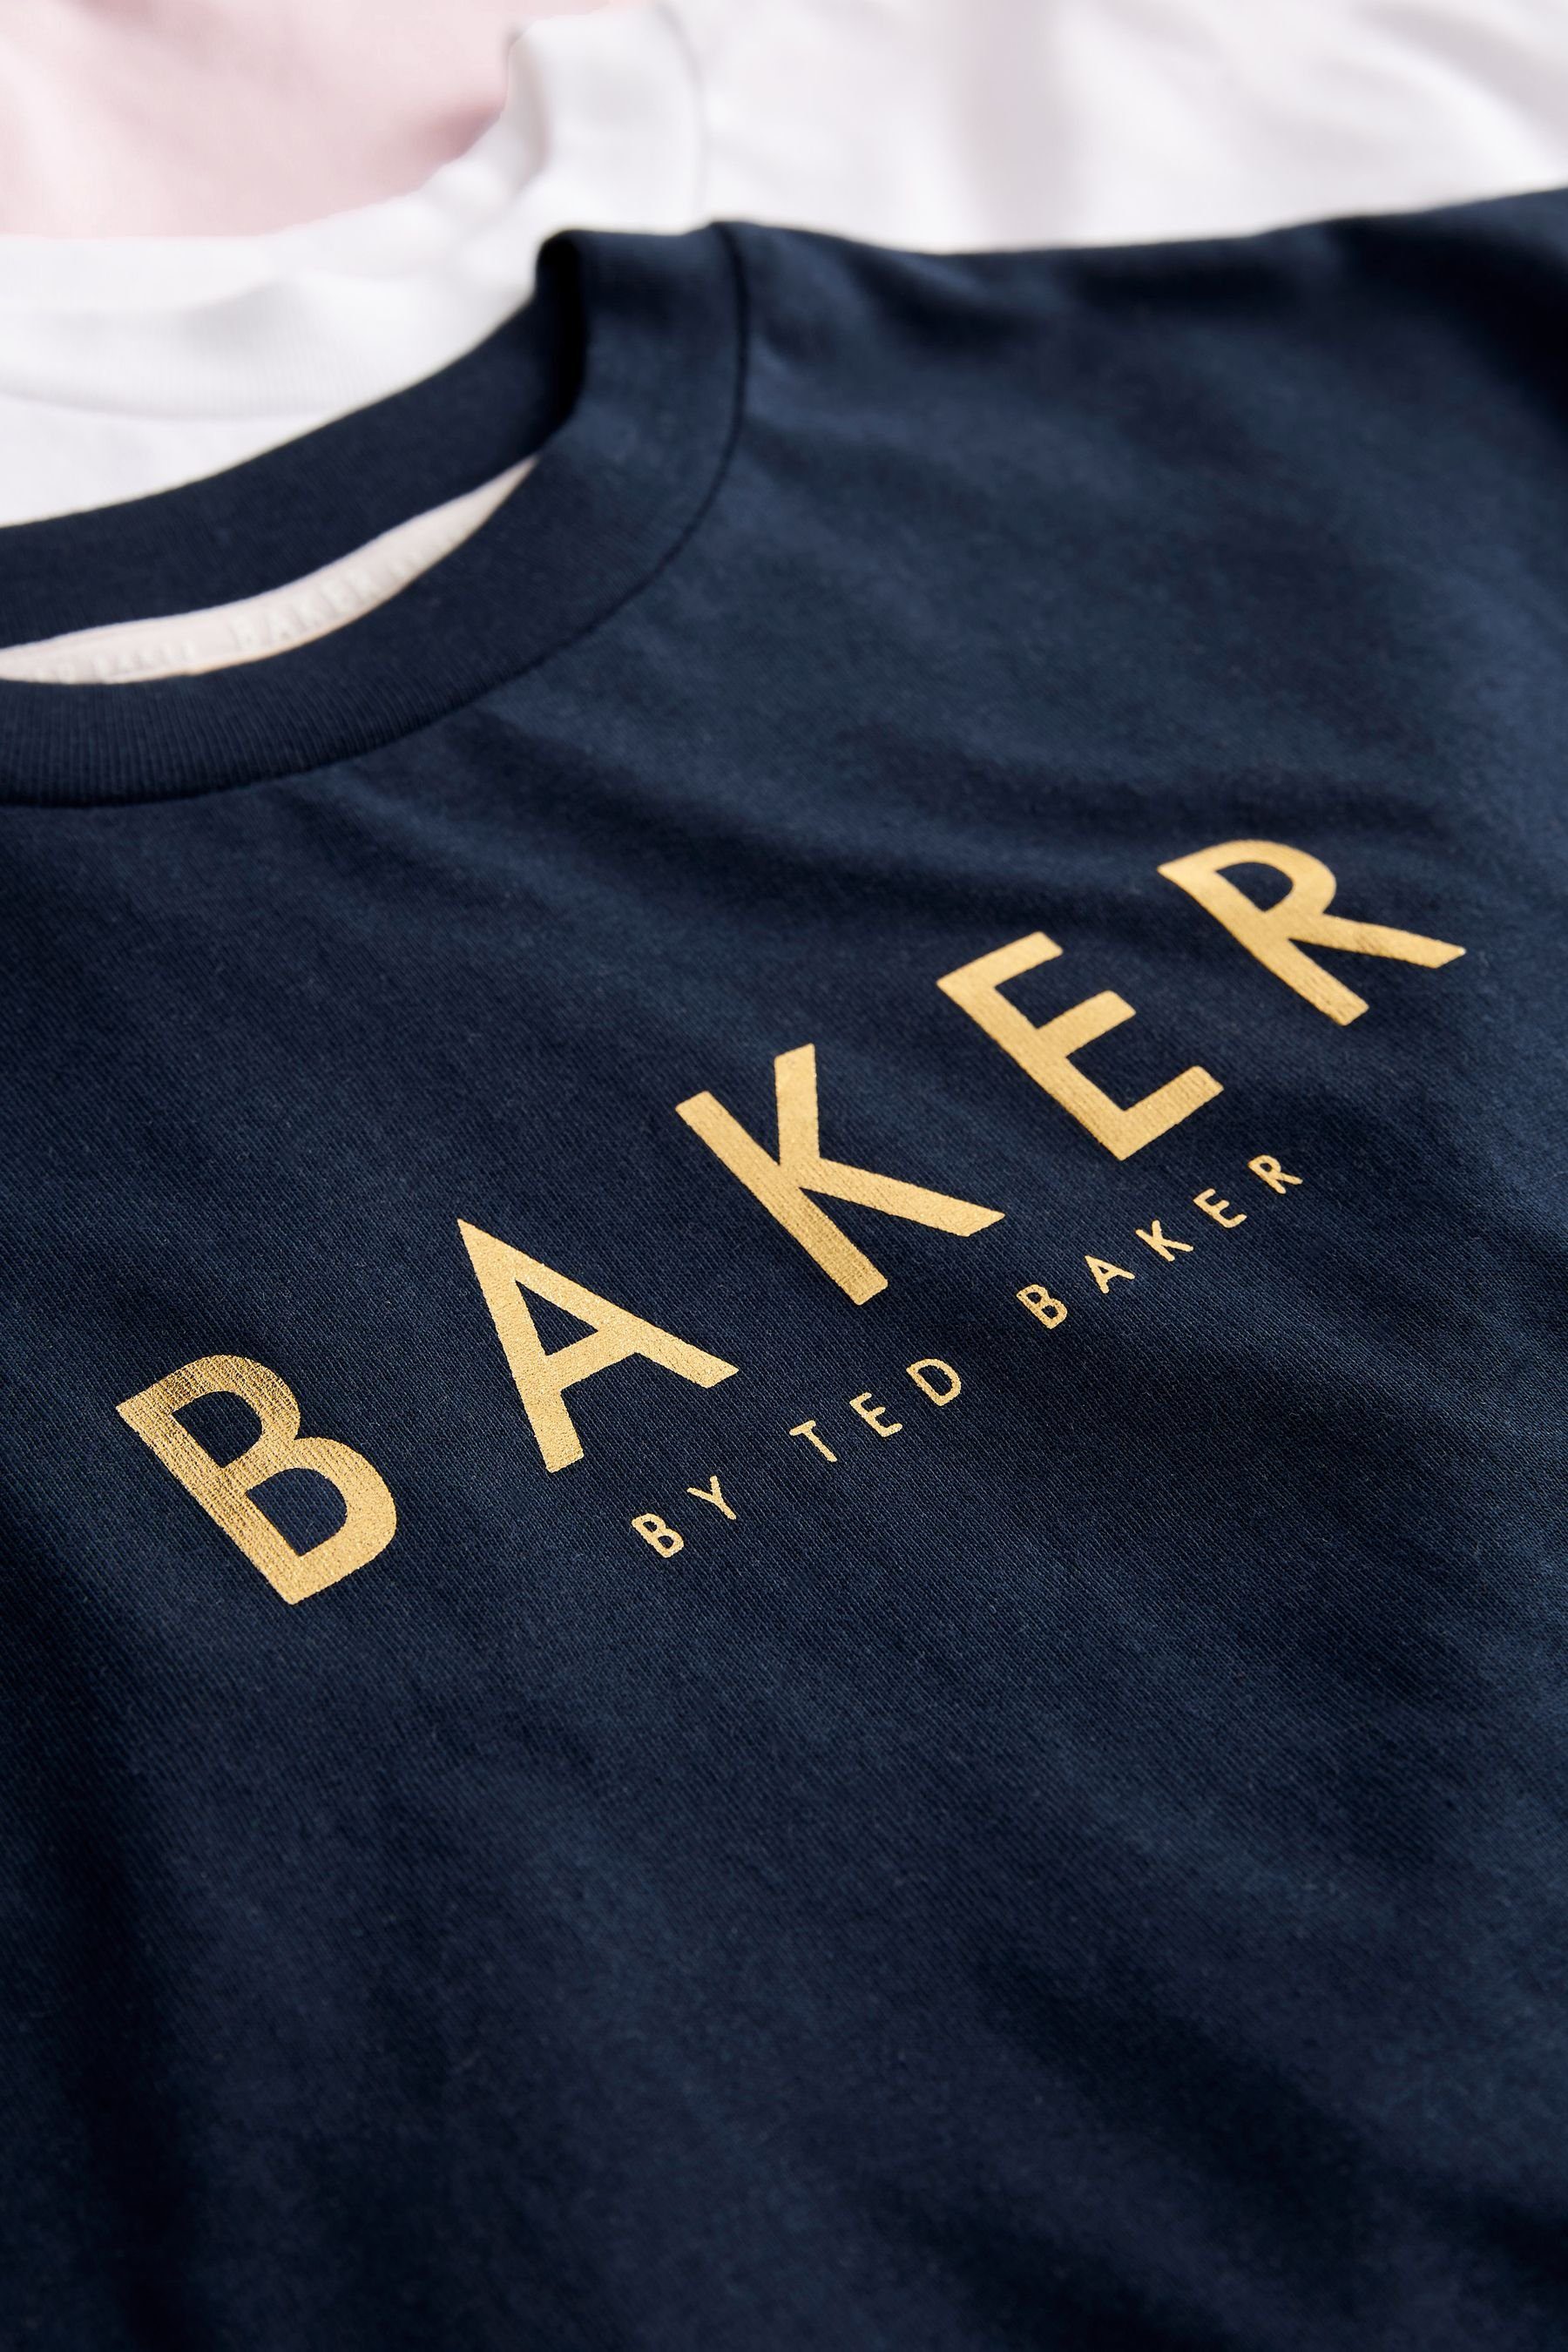 T-Shirts by Ted im Baker Baker T-Shirt Baker by 3er-Pack Baker (3-tlg) Ted